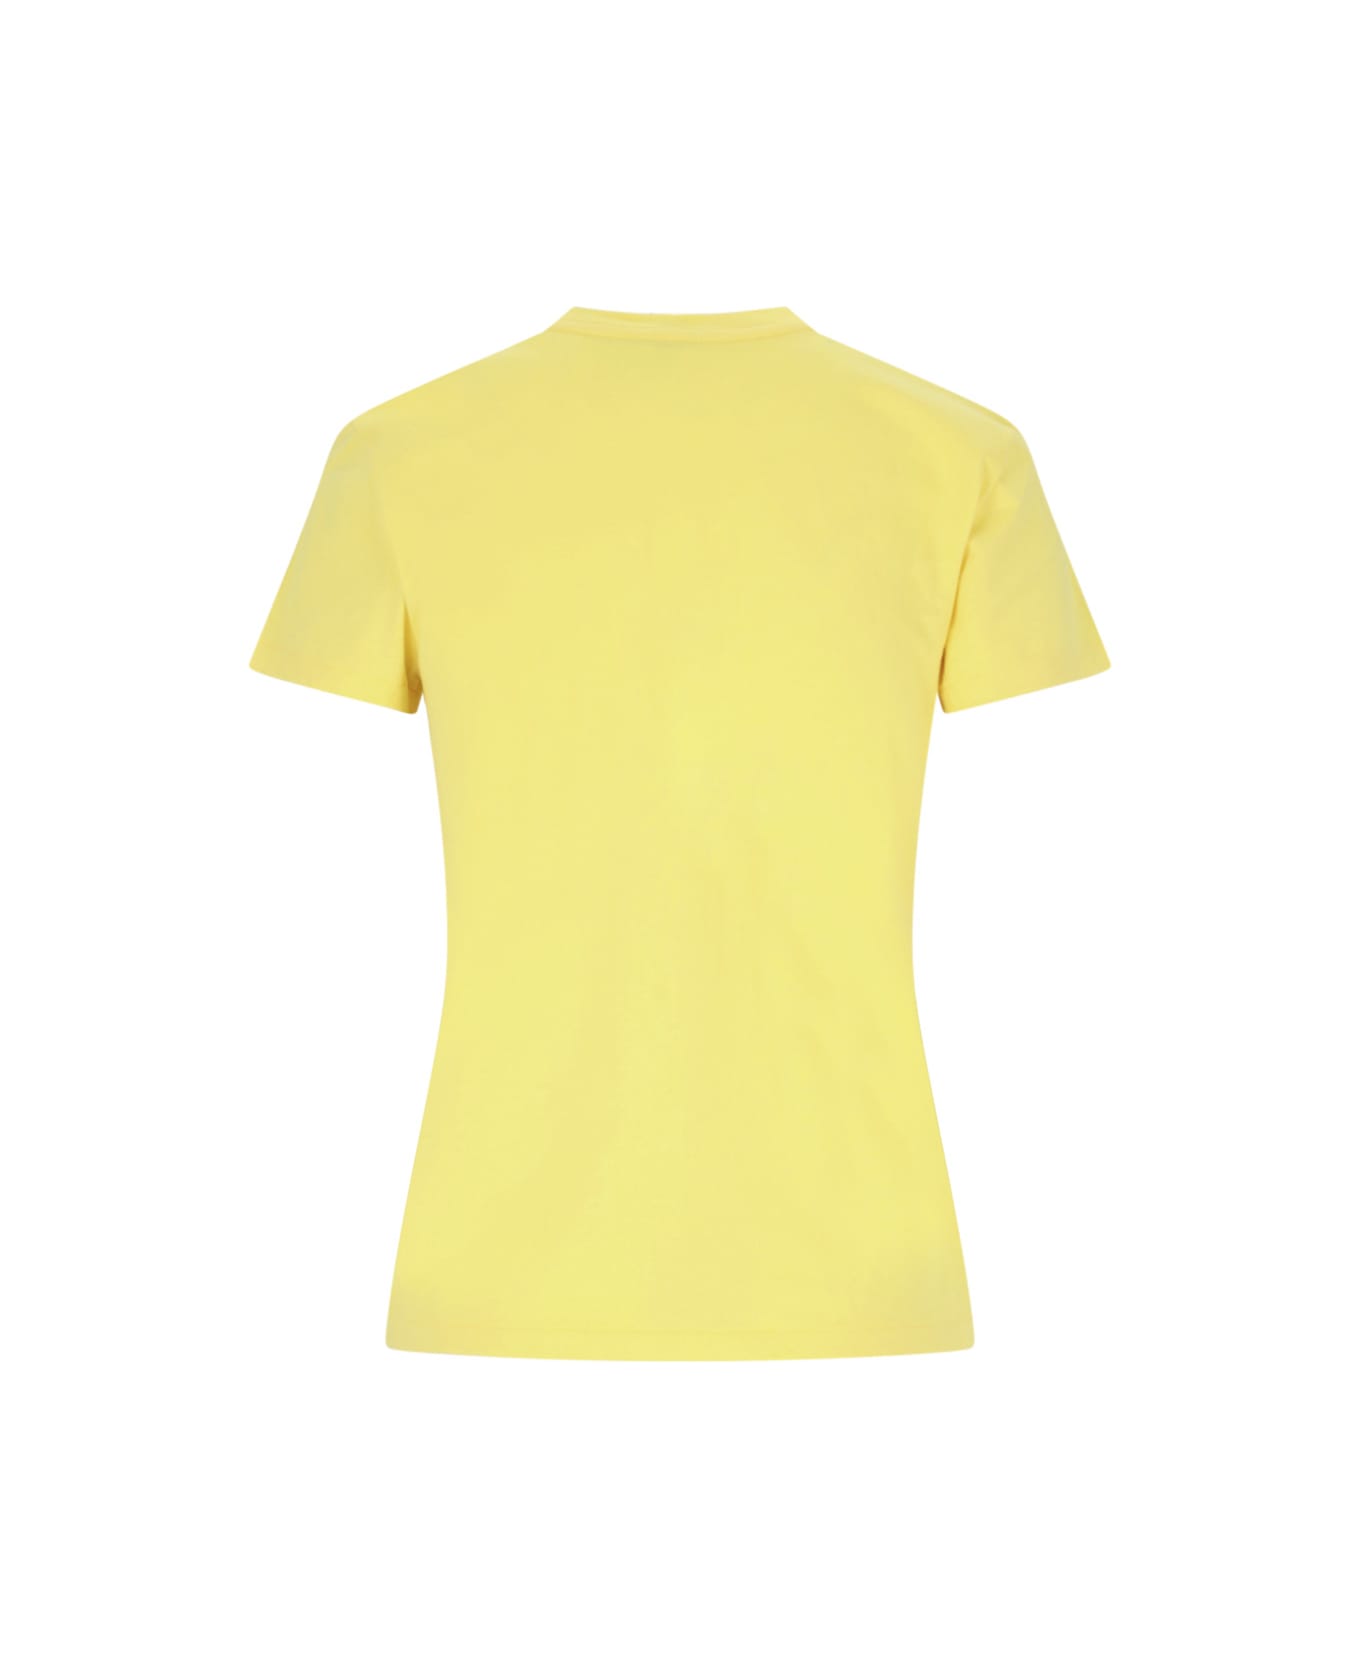 Polo Ralph Lauren Logo T-shirt - Yellow Tシャツ